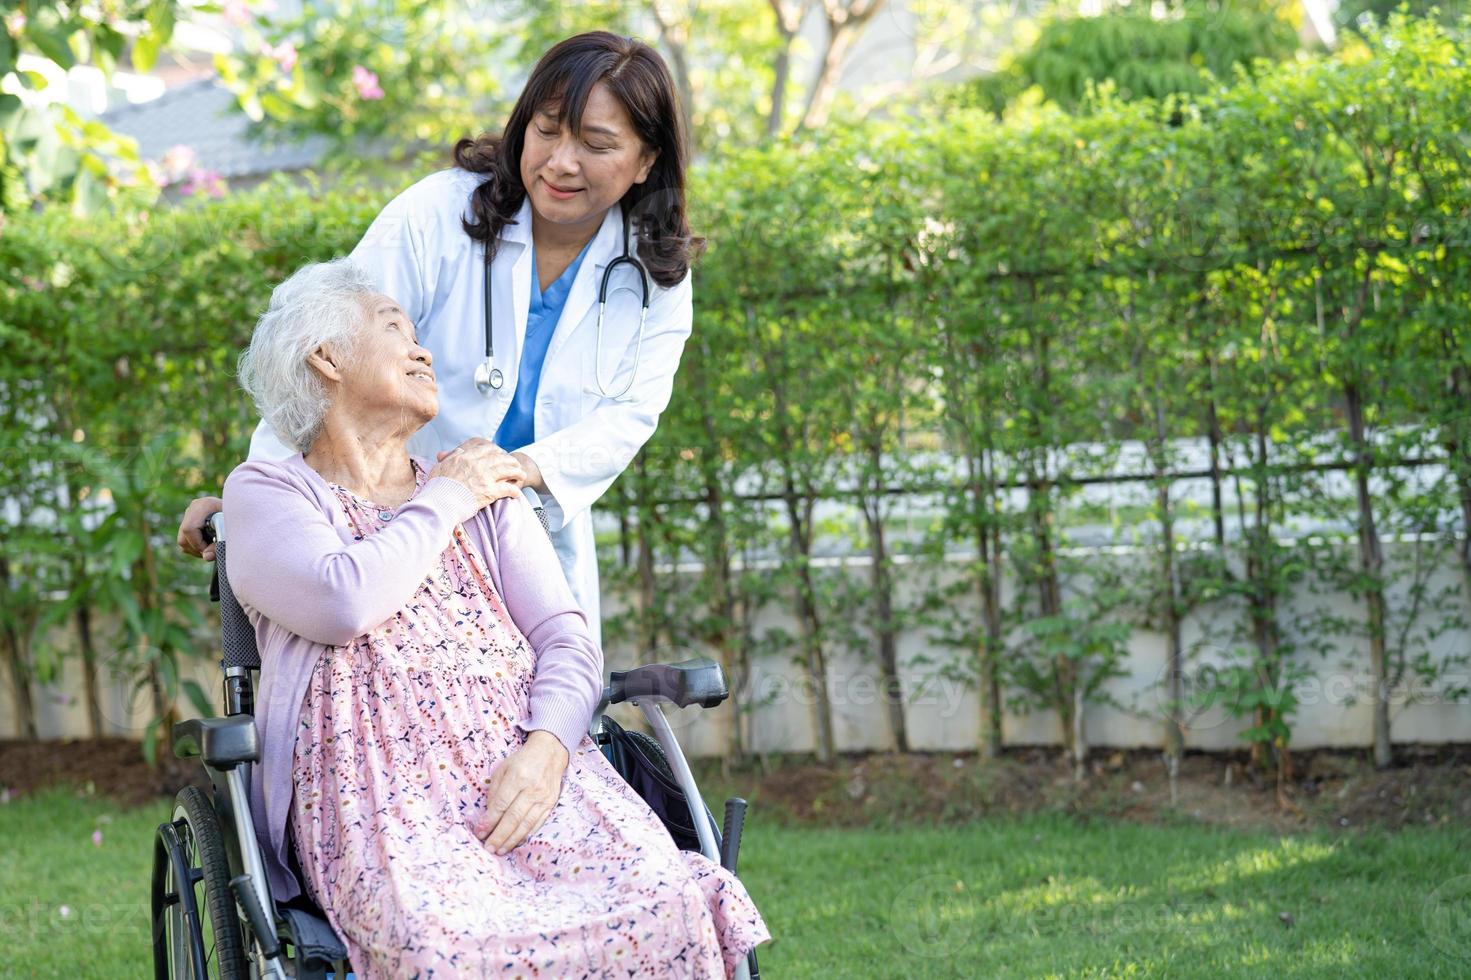 dokter hulp en zorg Aziatische senior of oudere oude dame vrouw patiënt zittend op een rolstoel in het park in de verpleegafdeling van het ziekenhuis, gezond sterk medisch concept. foto